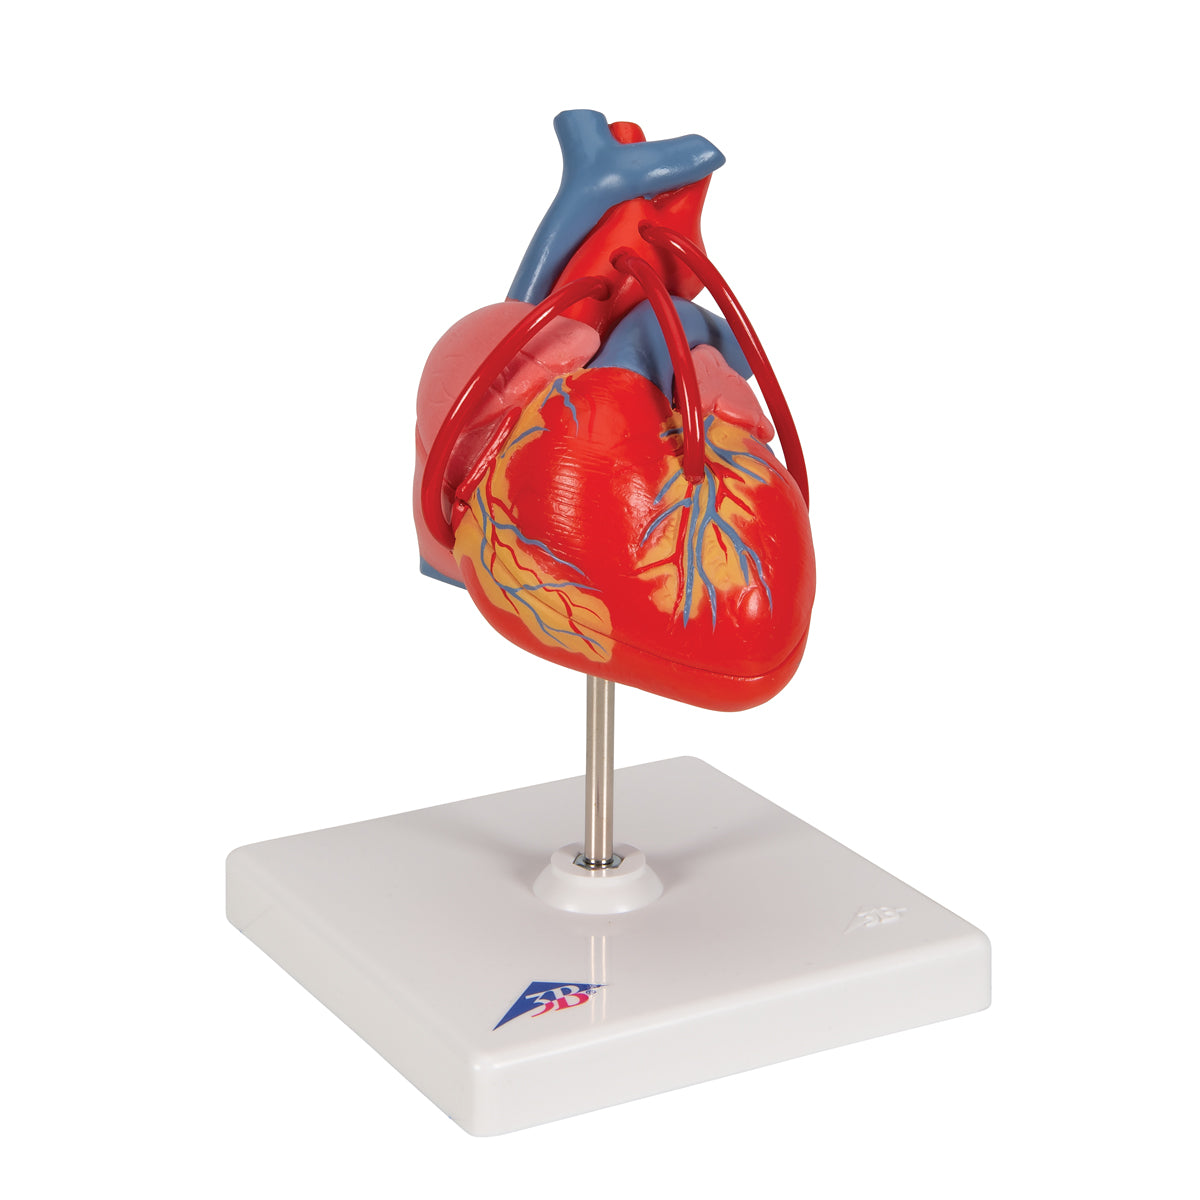 Hjärtmodell som visar resultatet efter en bypass-operation